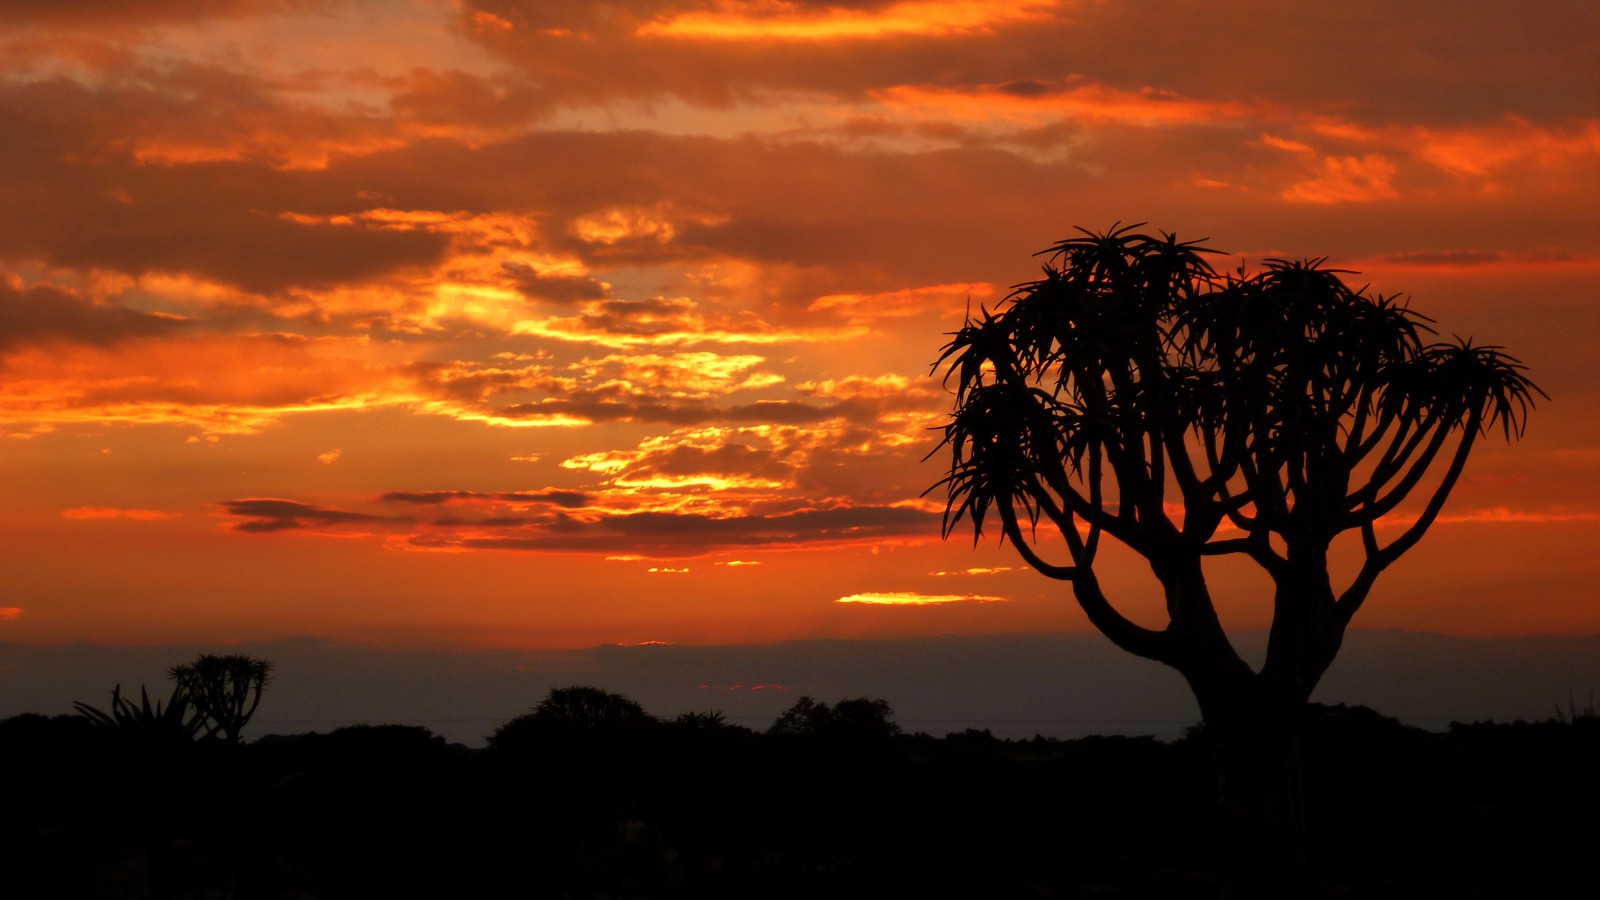 Užijete si krásné západy slunce na jihu afriky